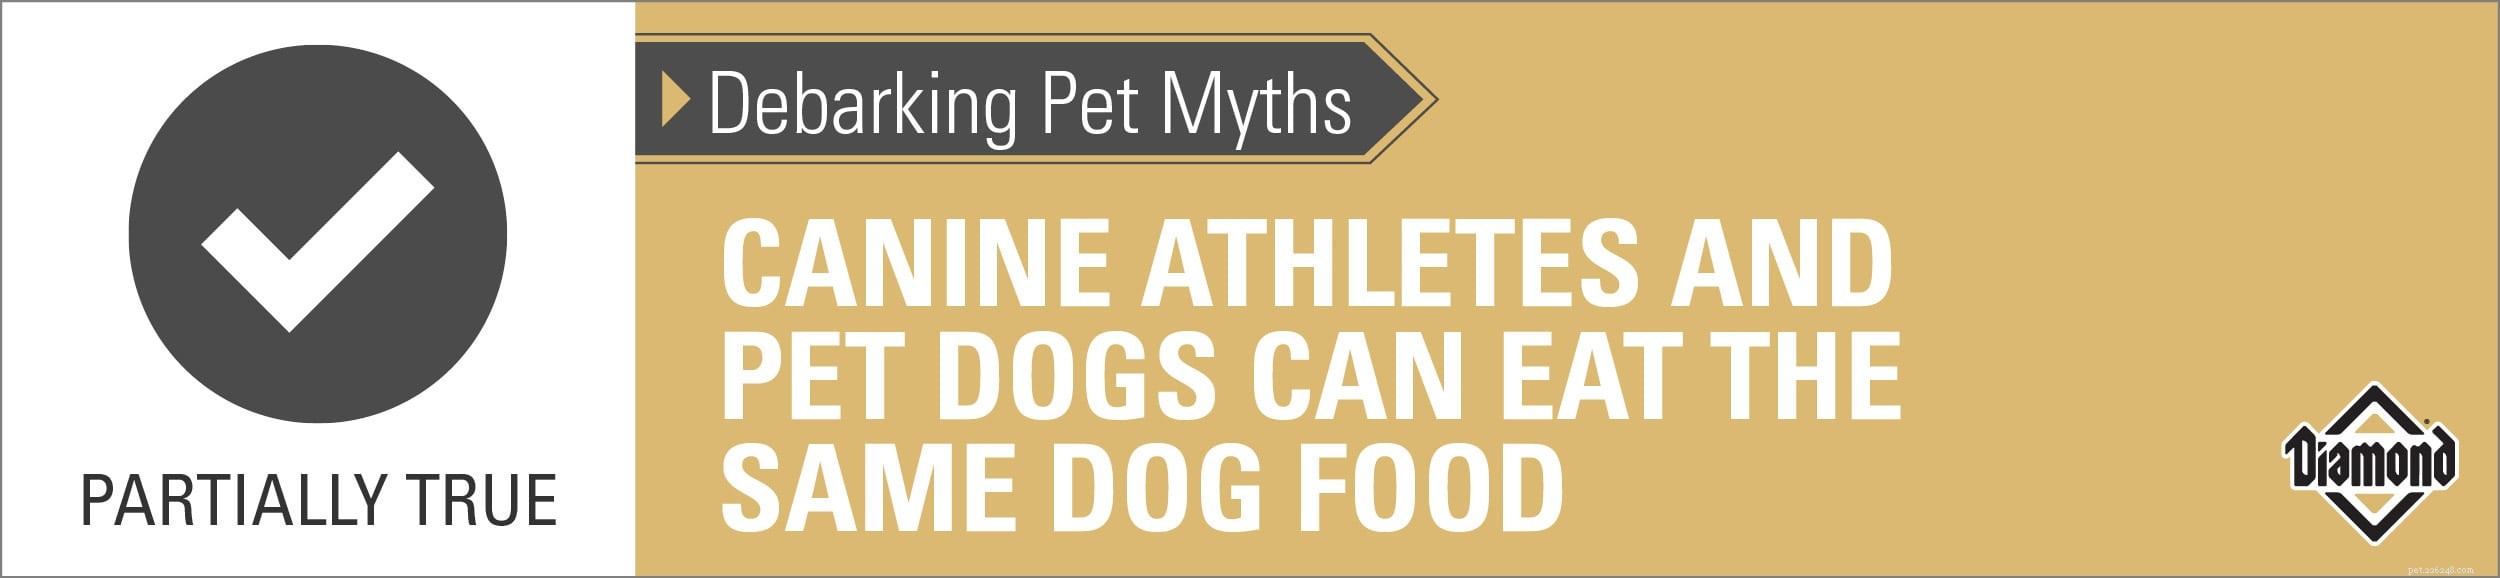 Het ontschorsen van huisdierenmythen:hondensporters en huisdieren kunnen hetzelfde hondenvoer eten